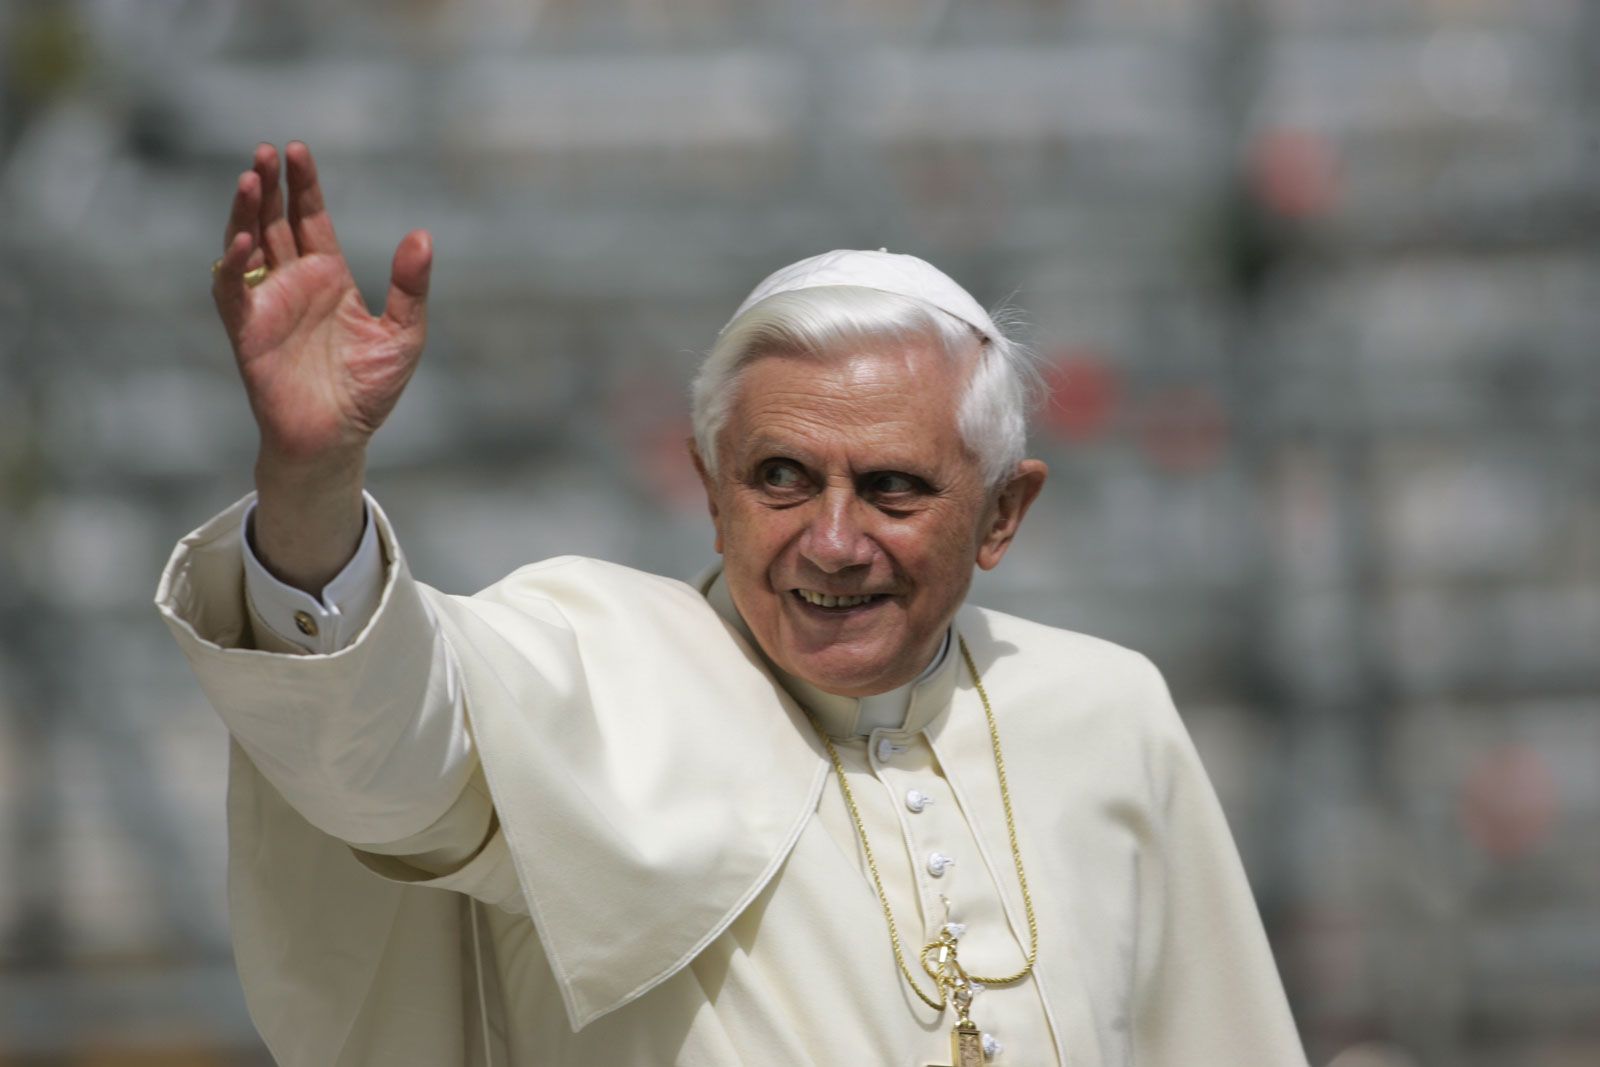 SỨ ĐIỆP MÙA CHAY 2013 – Của Đức Giáo Hoàng Bênêđictô XVI